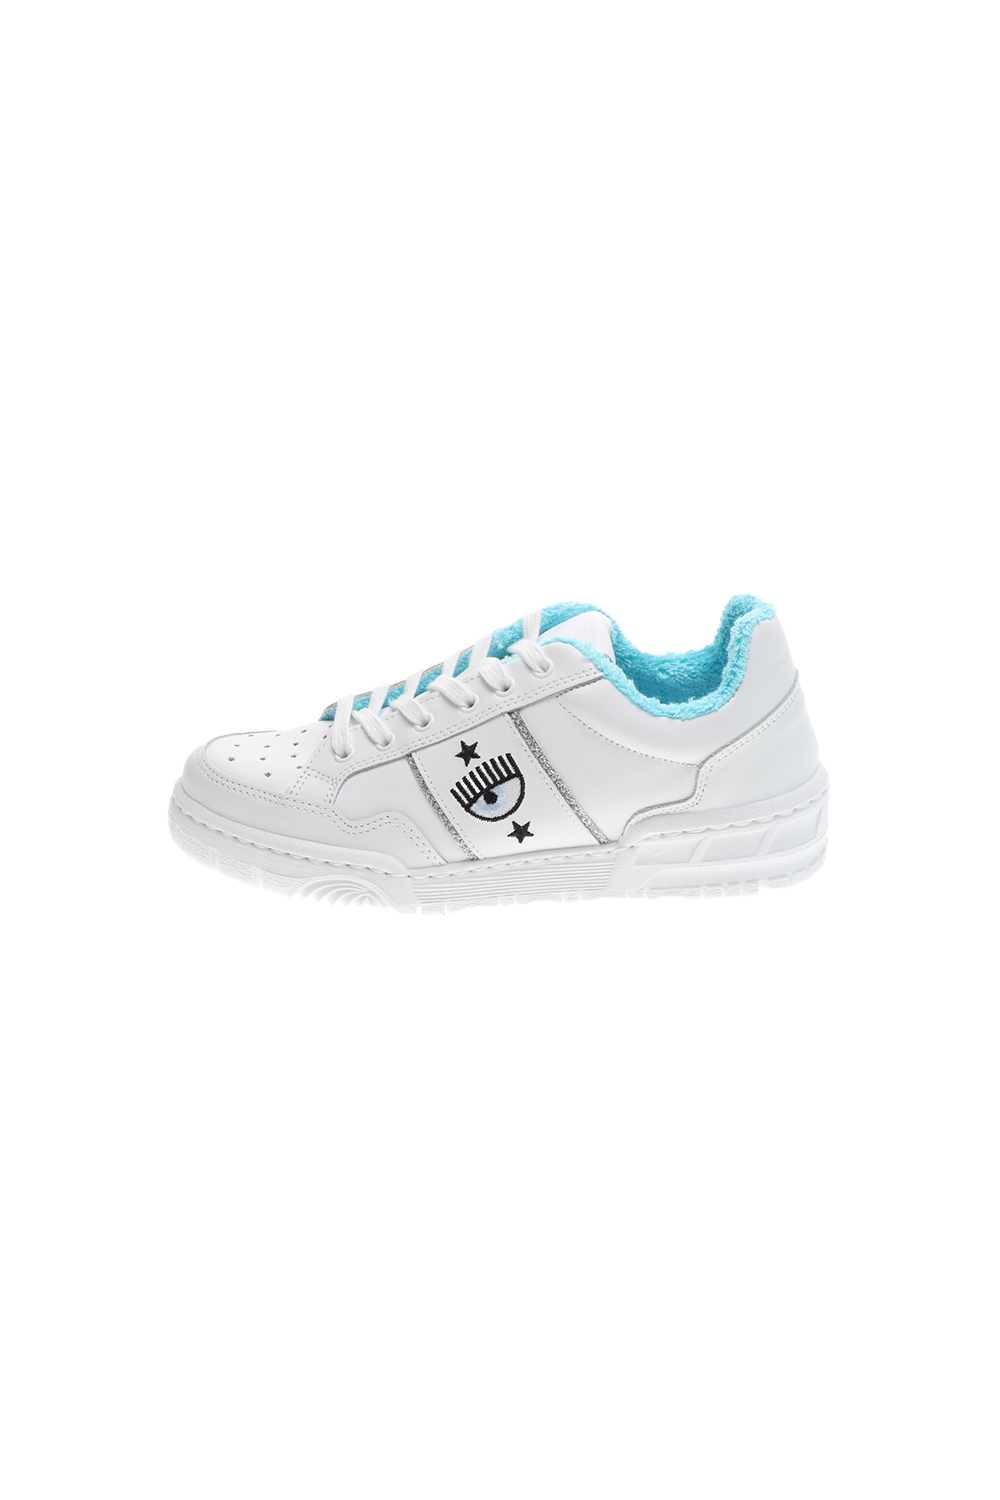 Γυναικεία/Παπούτσια/Sneakers CHIARRA FERRAGNI - Γυναικεία sneakers CHIARRA FERRAGNI CF2830-009 λευκά